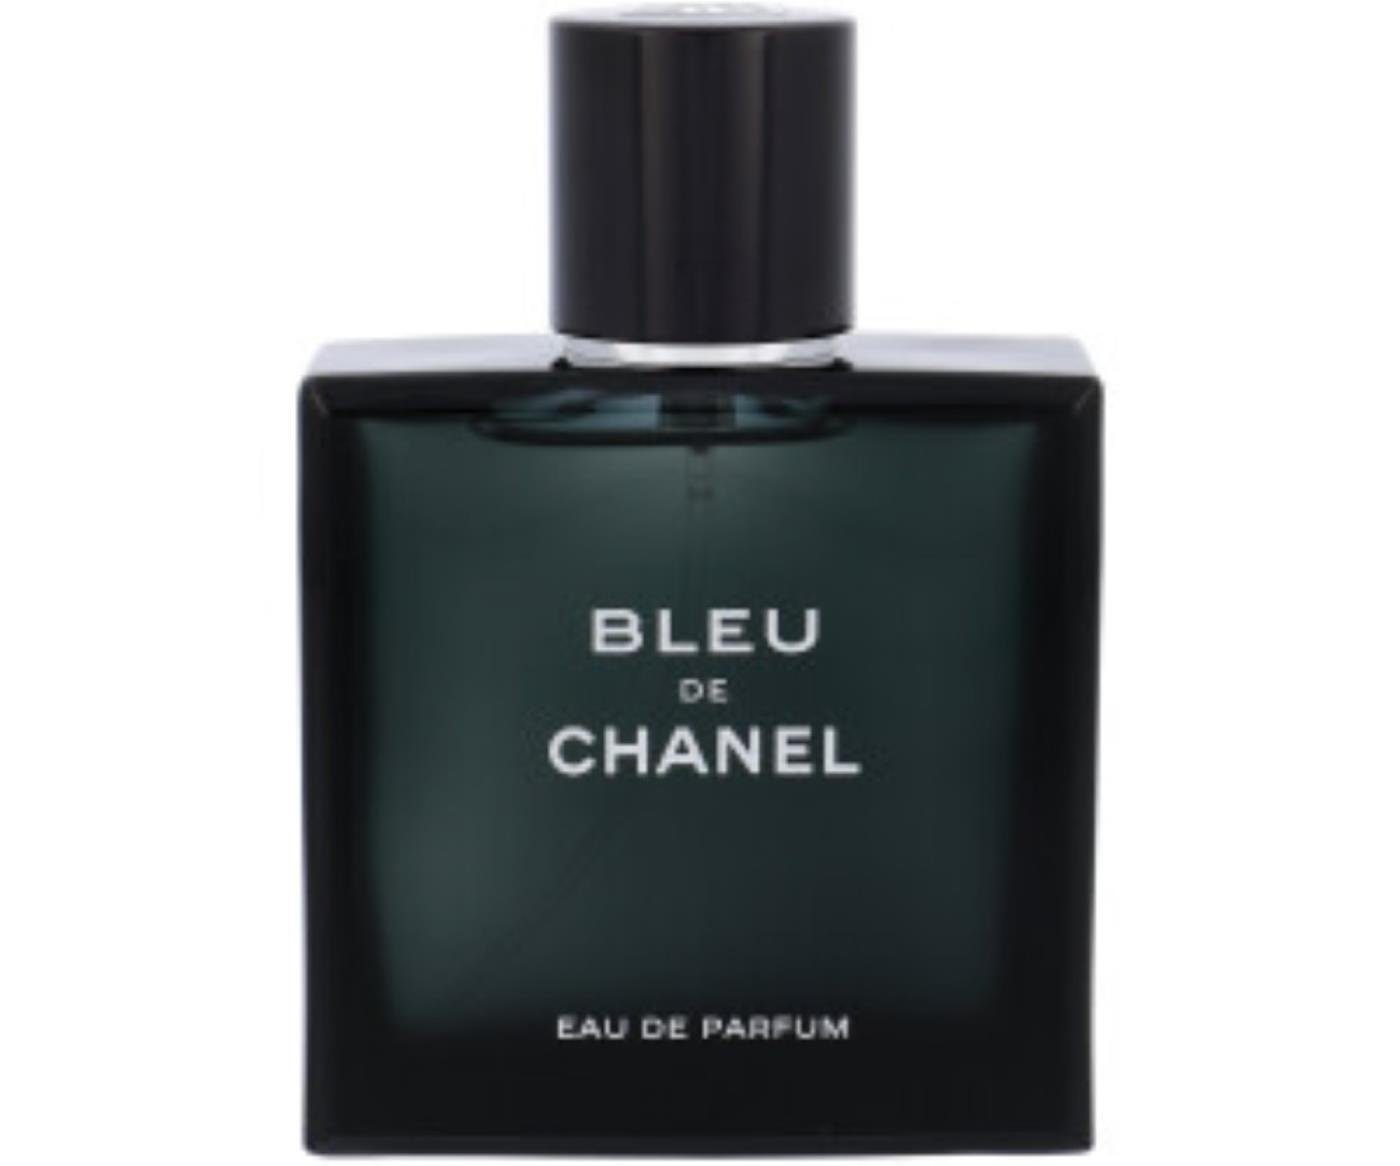 https://i.otto.de/i/otto/9c93e69a-2dab-57bc-8102-aca264c61981/chanel-eau-de-parfum-chanel-bleu-eau-de-parfum.jpg?$formatz$